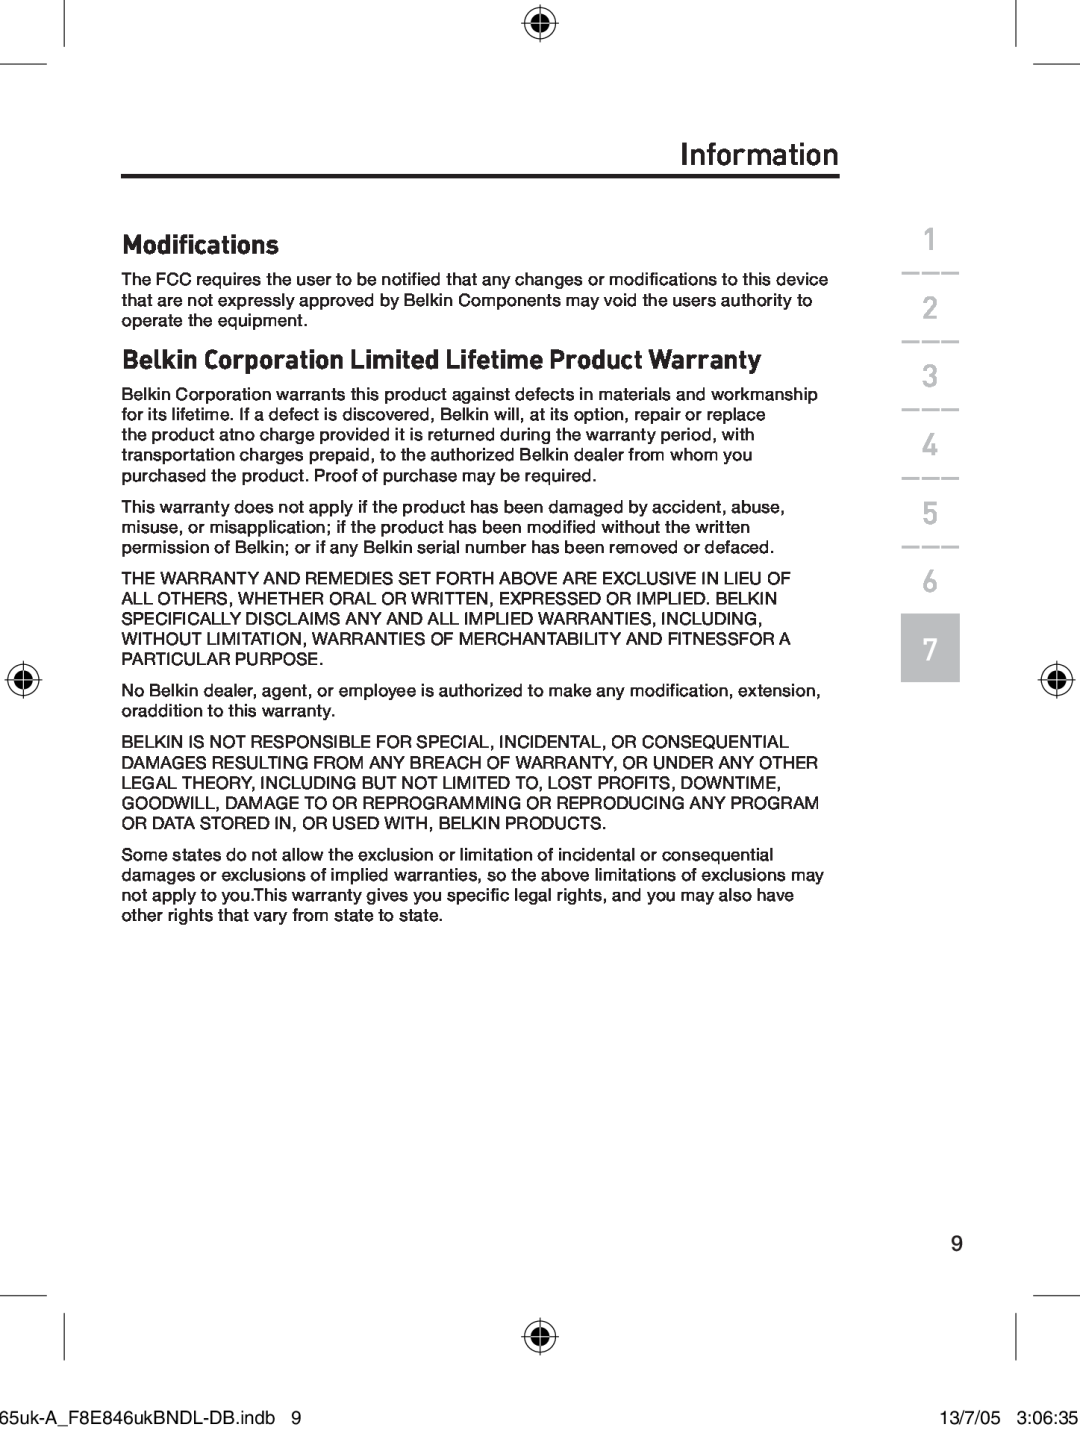 Belkin F8E846UKBNDL-DB Modifications, Belkin Corporation Limited Lifetime Product Warranty, Information, 13/7/05 